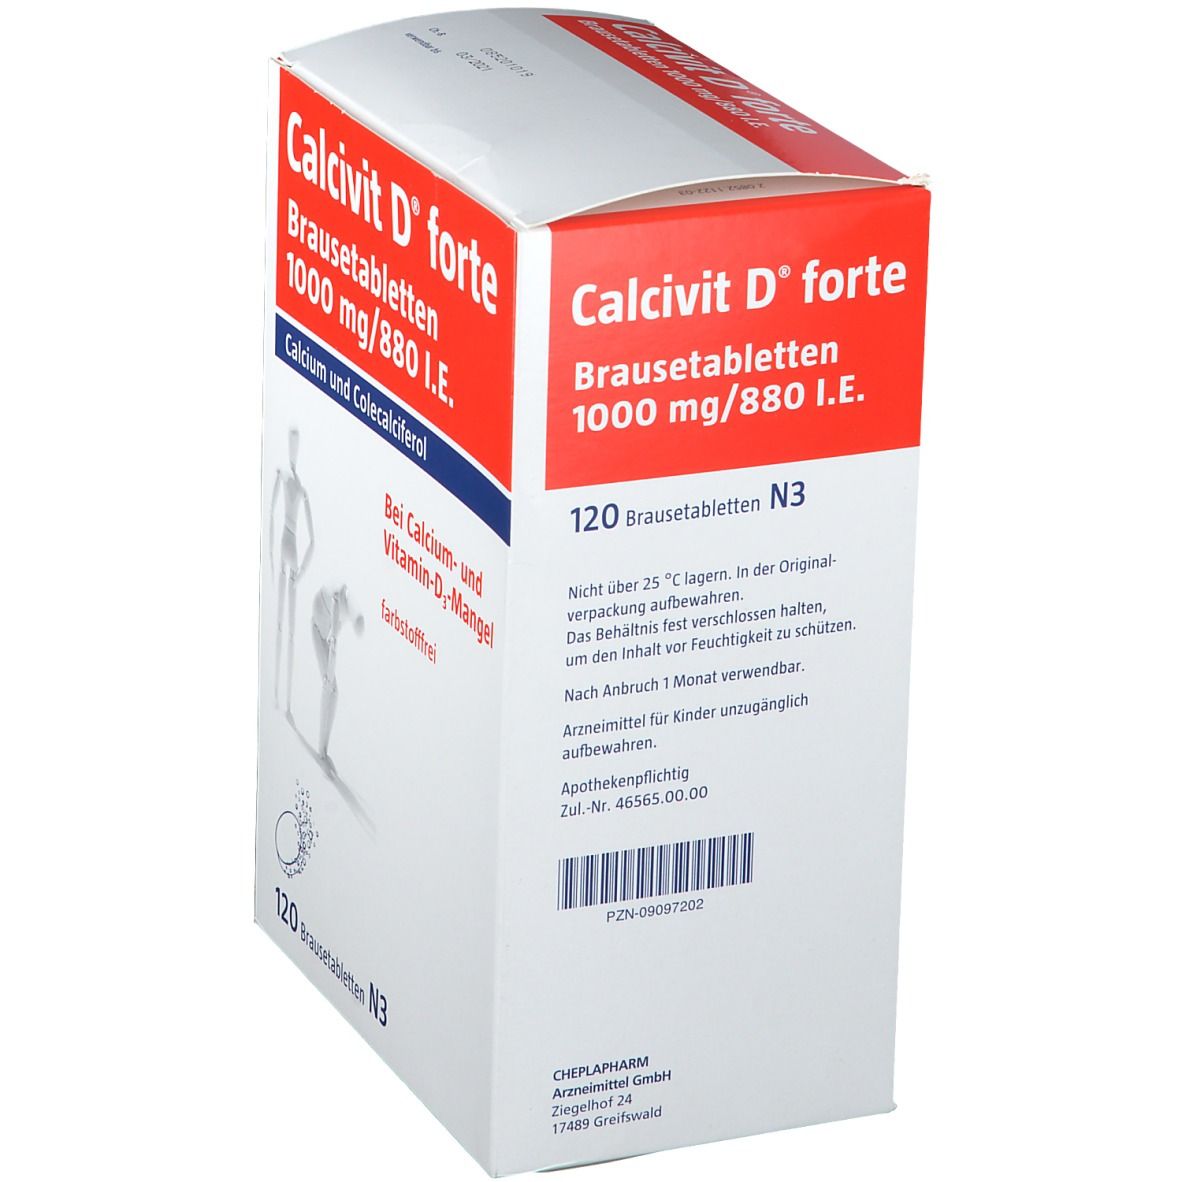 Calcivit D® forte Brausetabletten, 1000 mg/880 I.E.